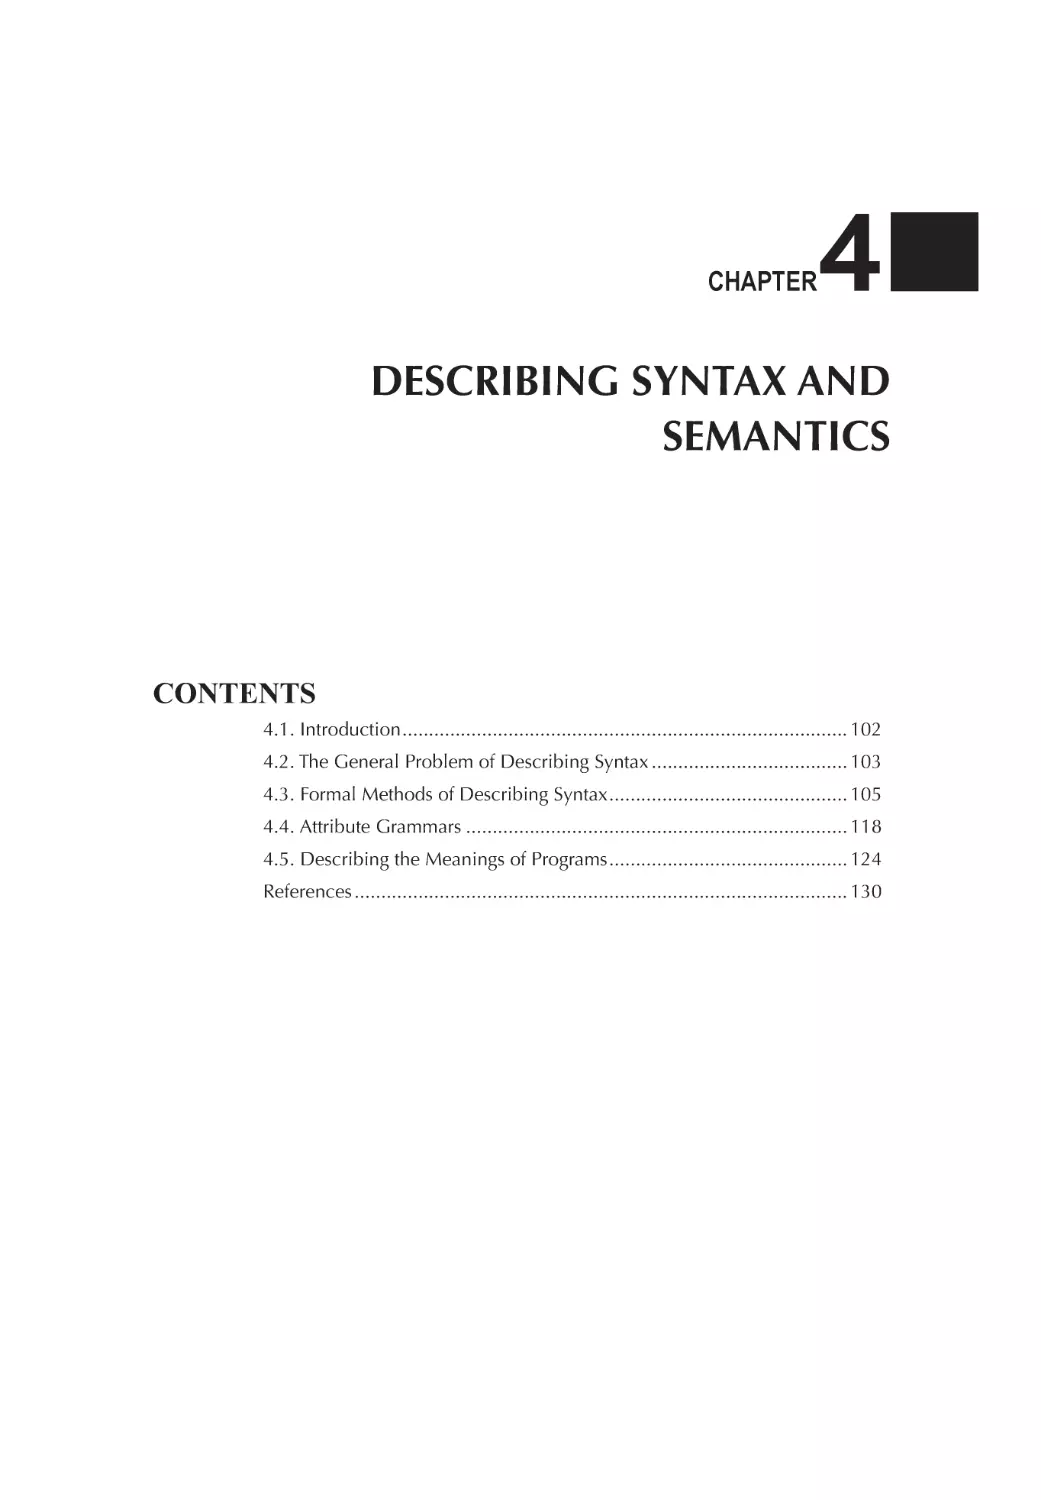 Chapter 4 Describing Syntax and Semantics